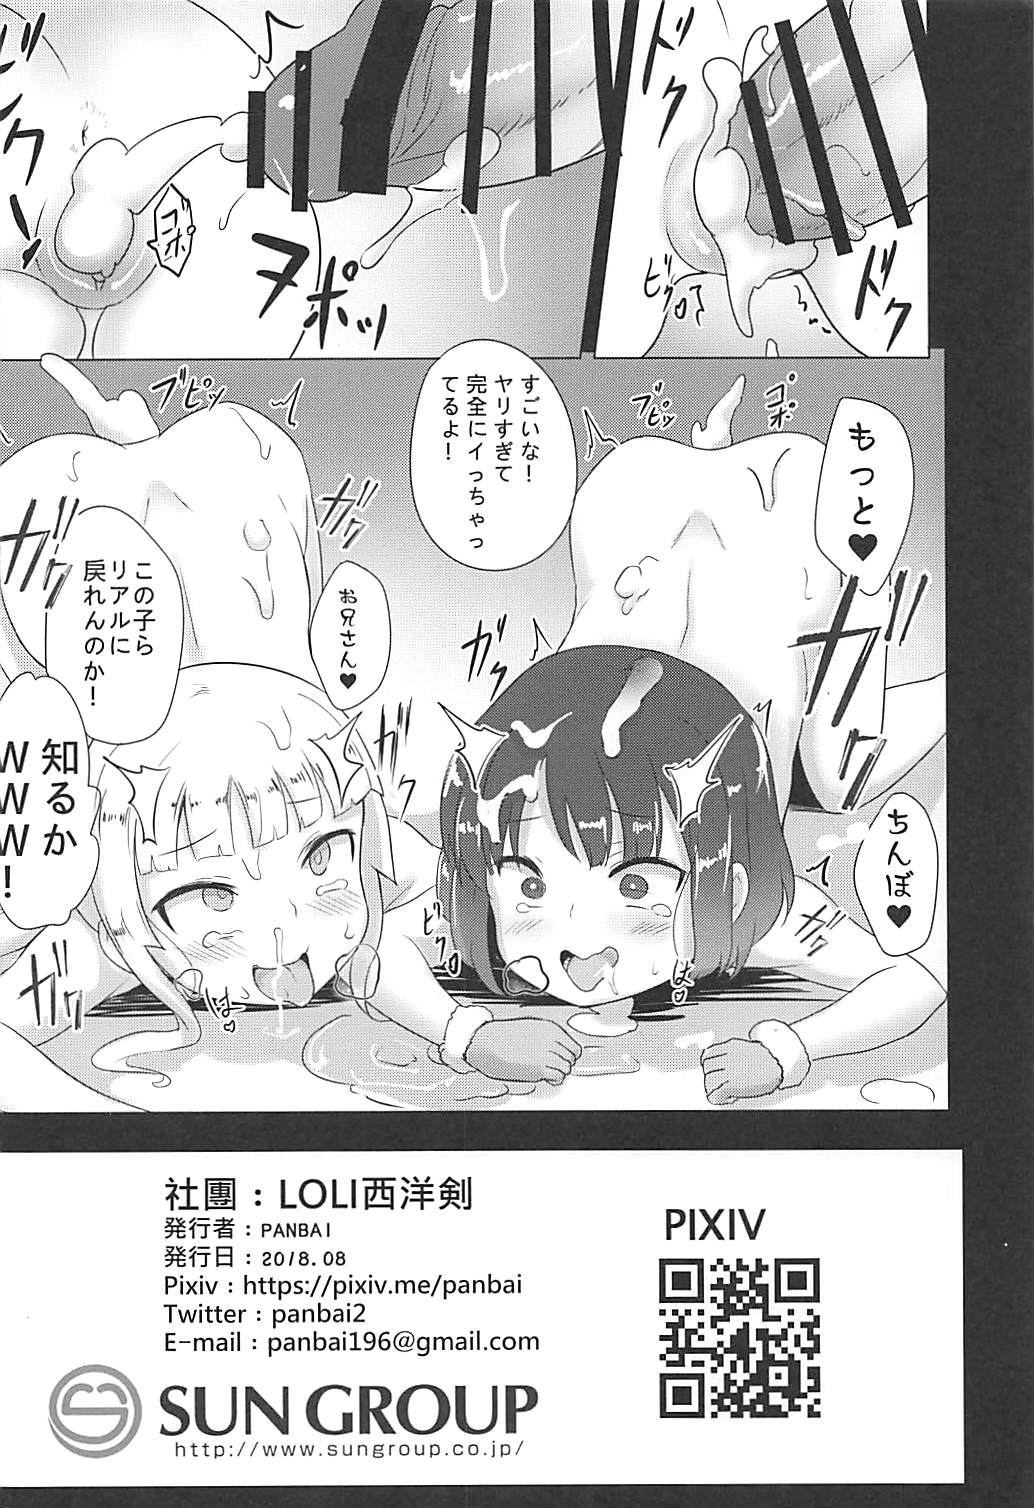 [LOLI西洋剣 (PANBAI)] レン&フカと幼女sex party (ソードアート・オンライン オルタナティブ ガンゲイル・オンライン)